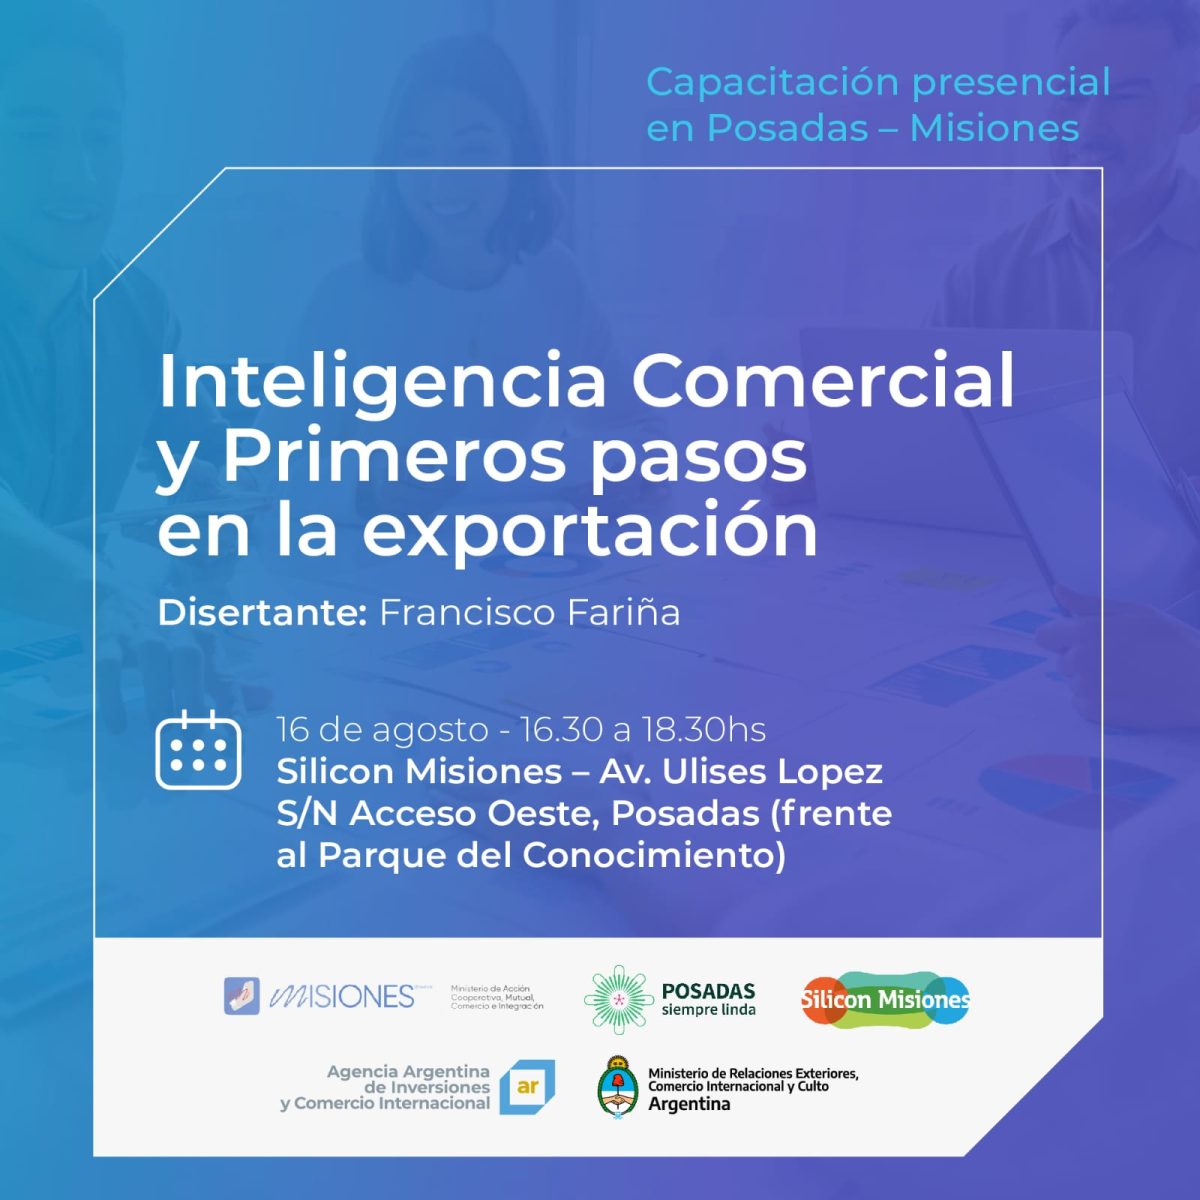 Inscripciones abiertas para el taller sobre Inteligencia Comercial y primeros pasos en la Exportación